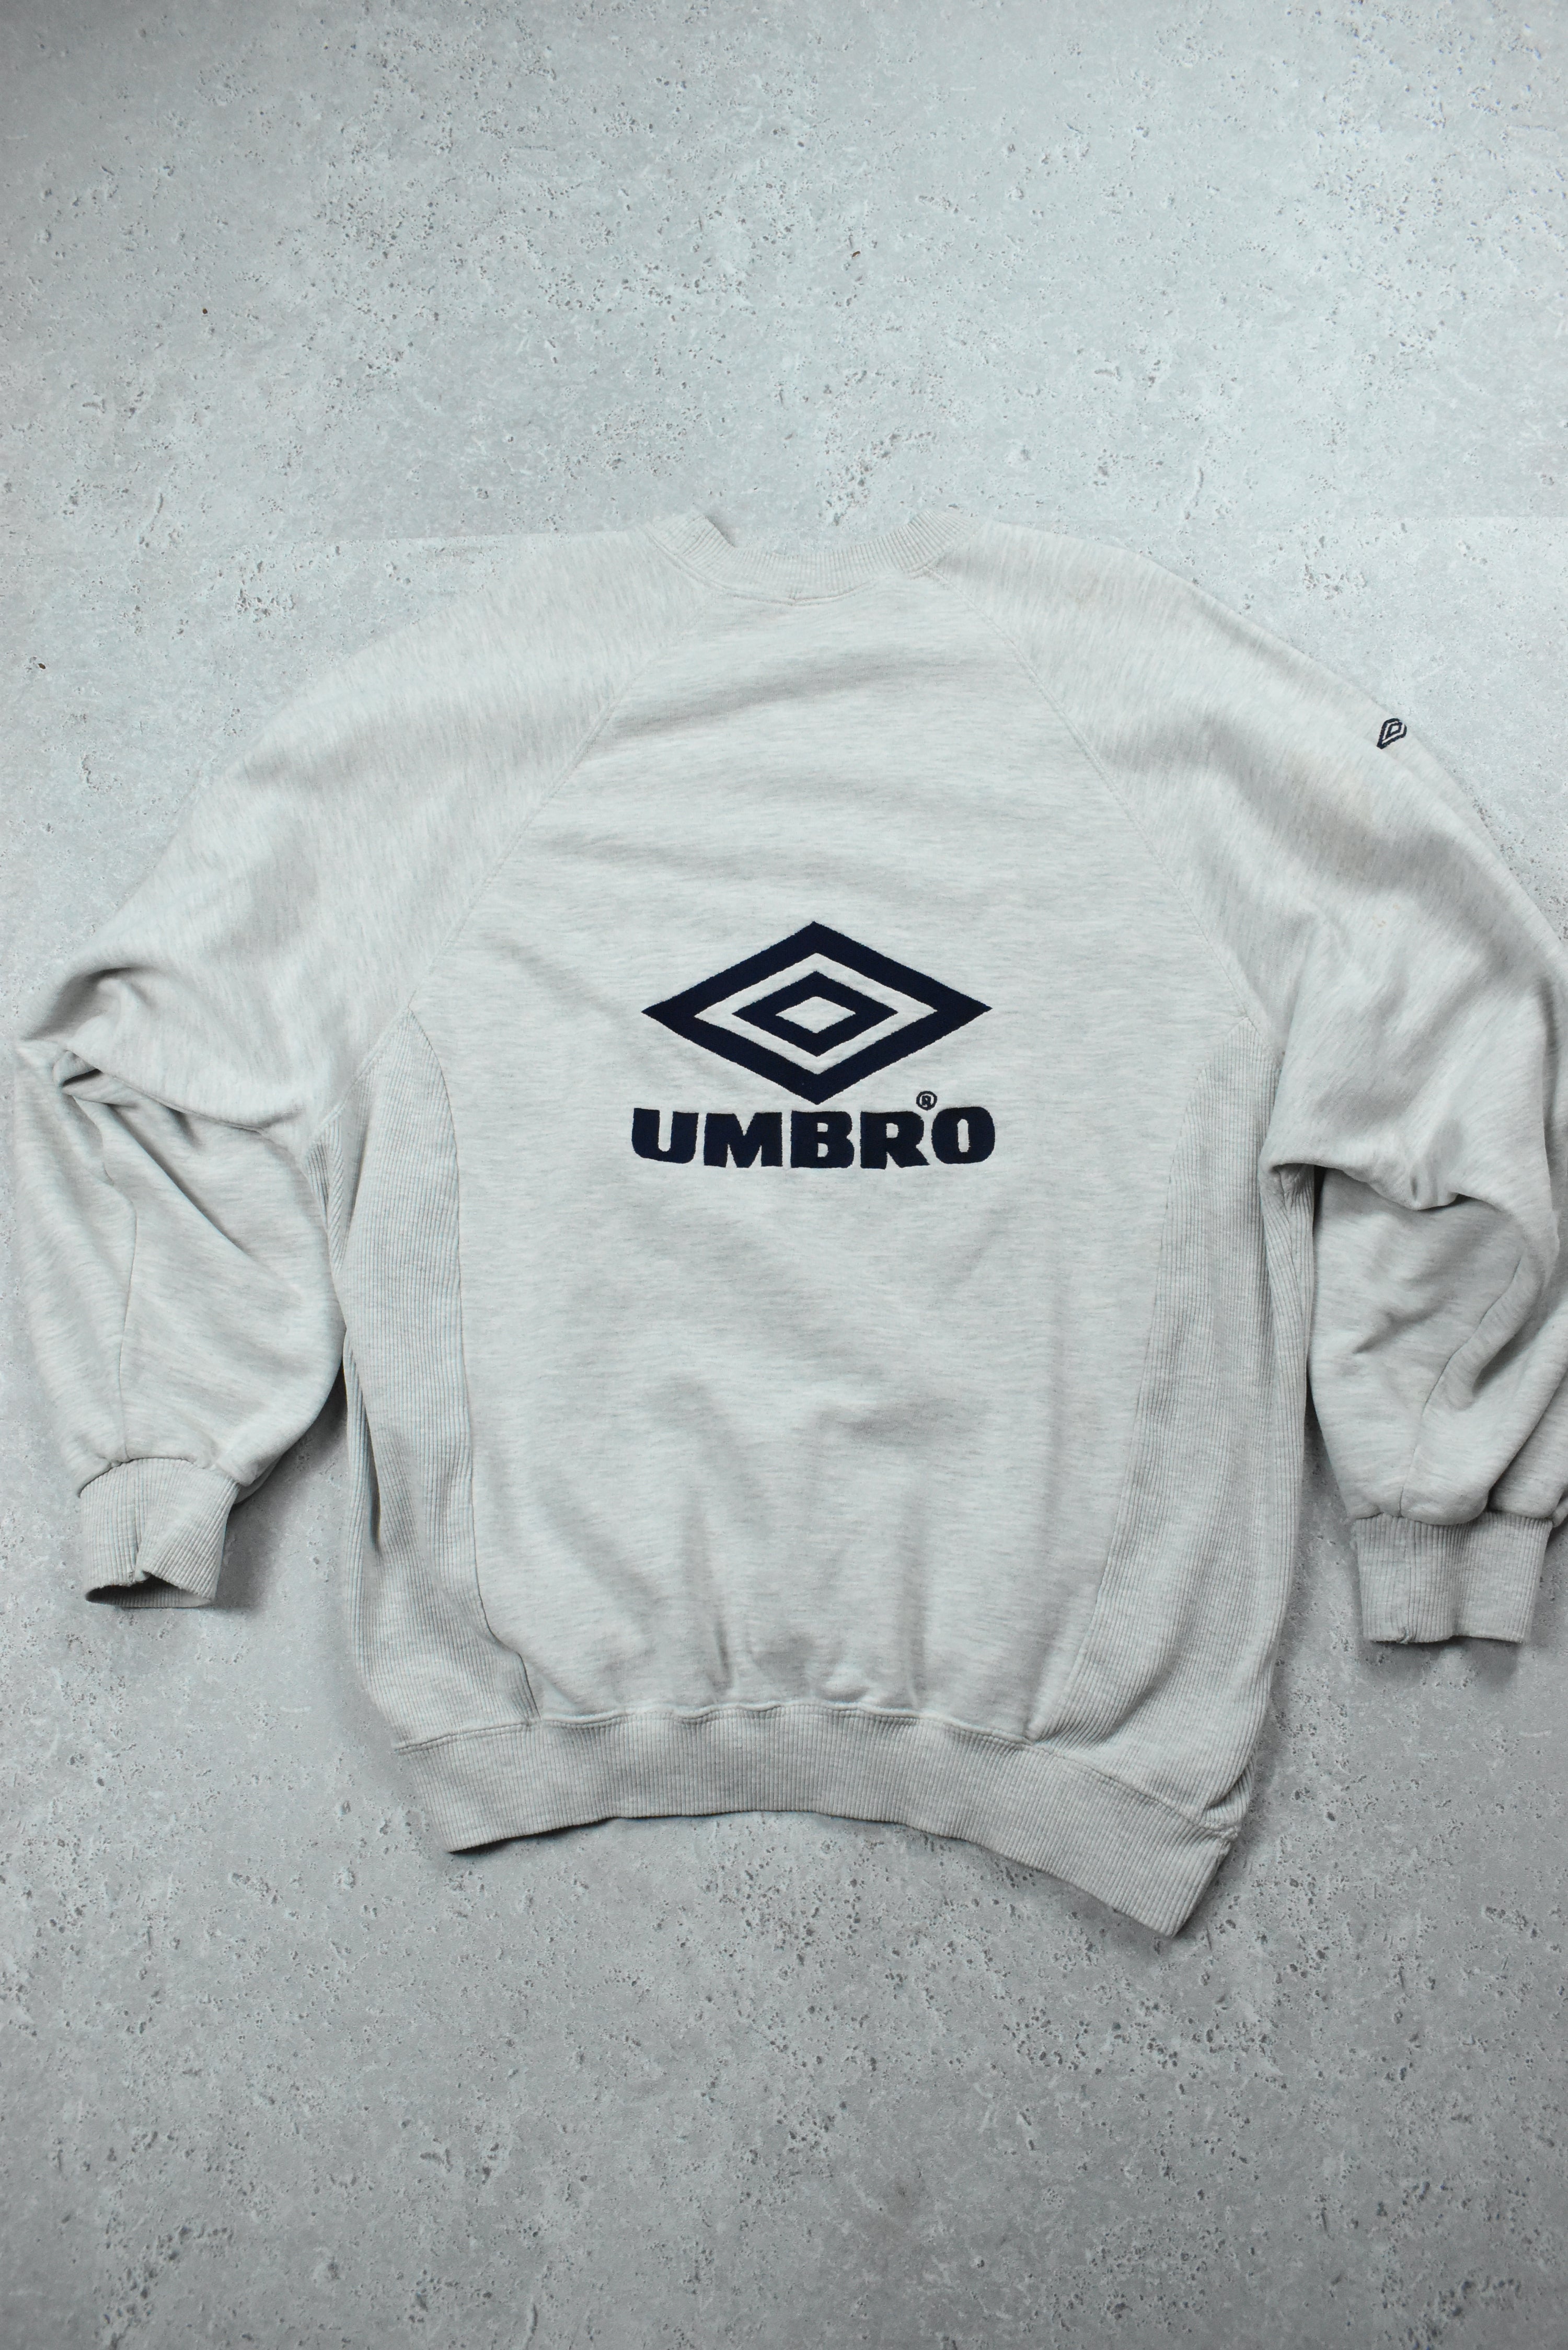 Vintage Umbro Embroidery Double Sided Sweatshirt Xlarge